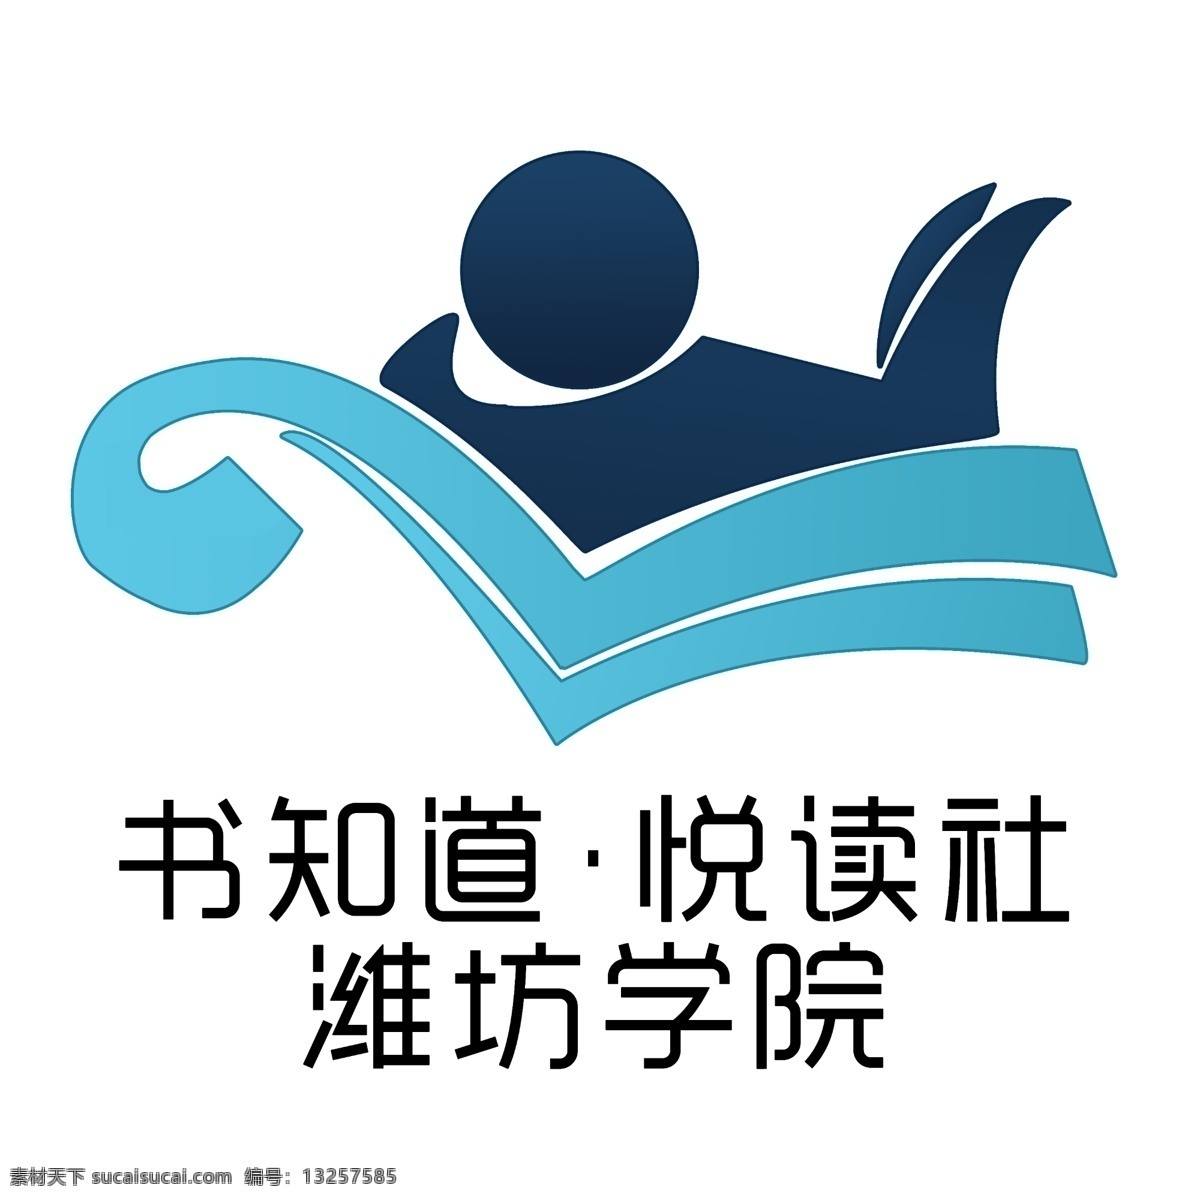 读书 社团 logo 白色